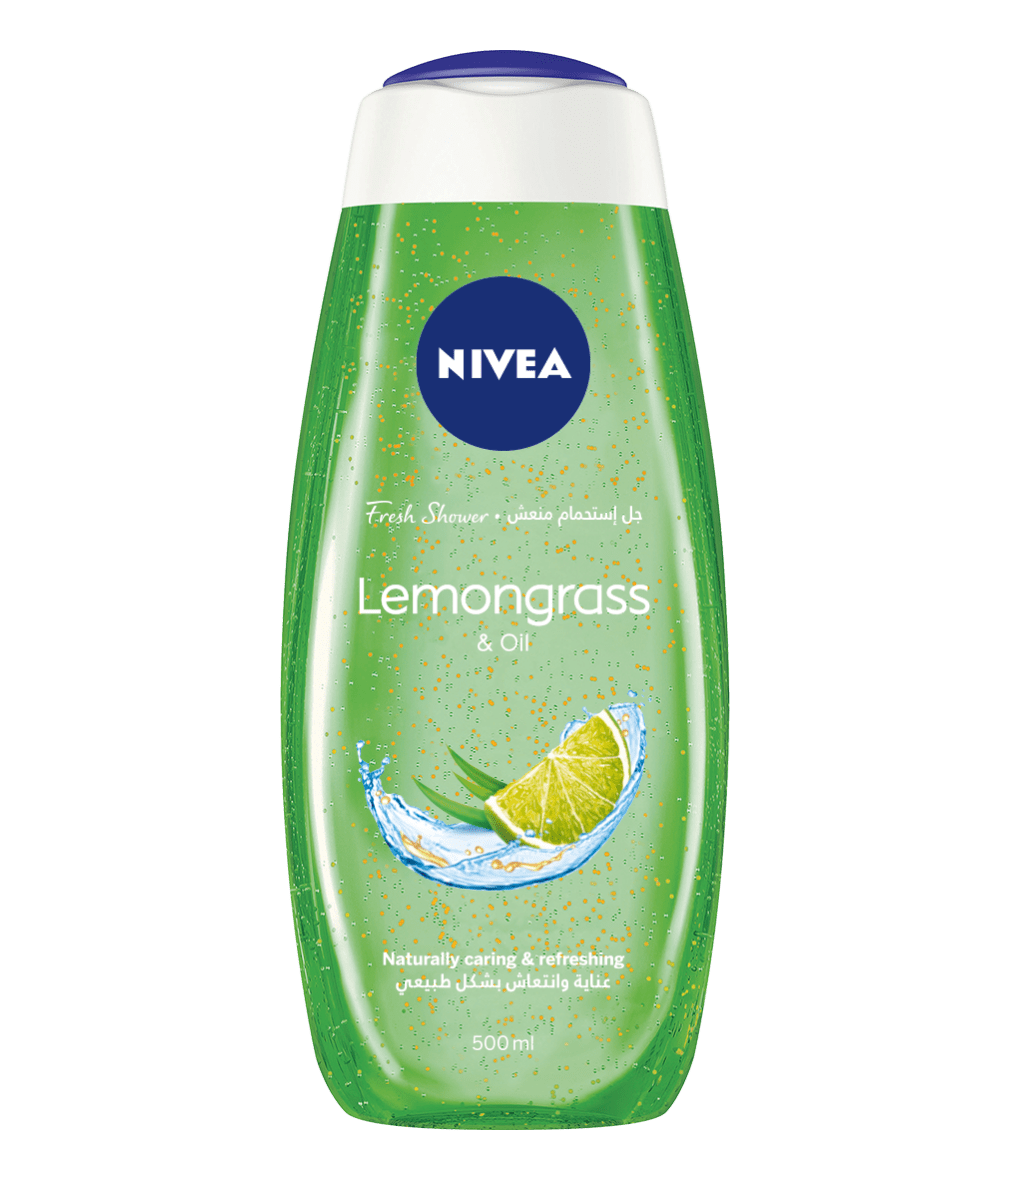 NIVEA Lemongrass & Oil Gel 500ml clean packshot bi-lingual